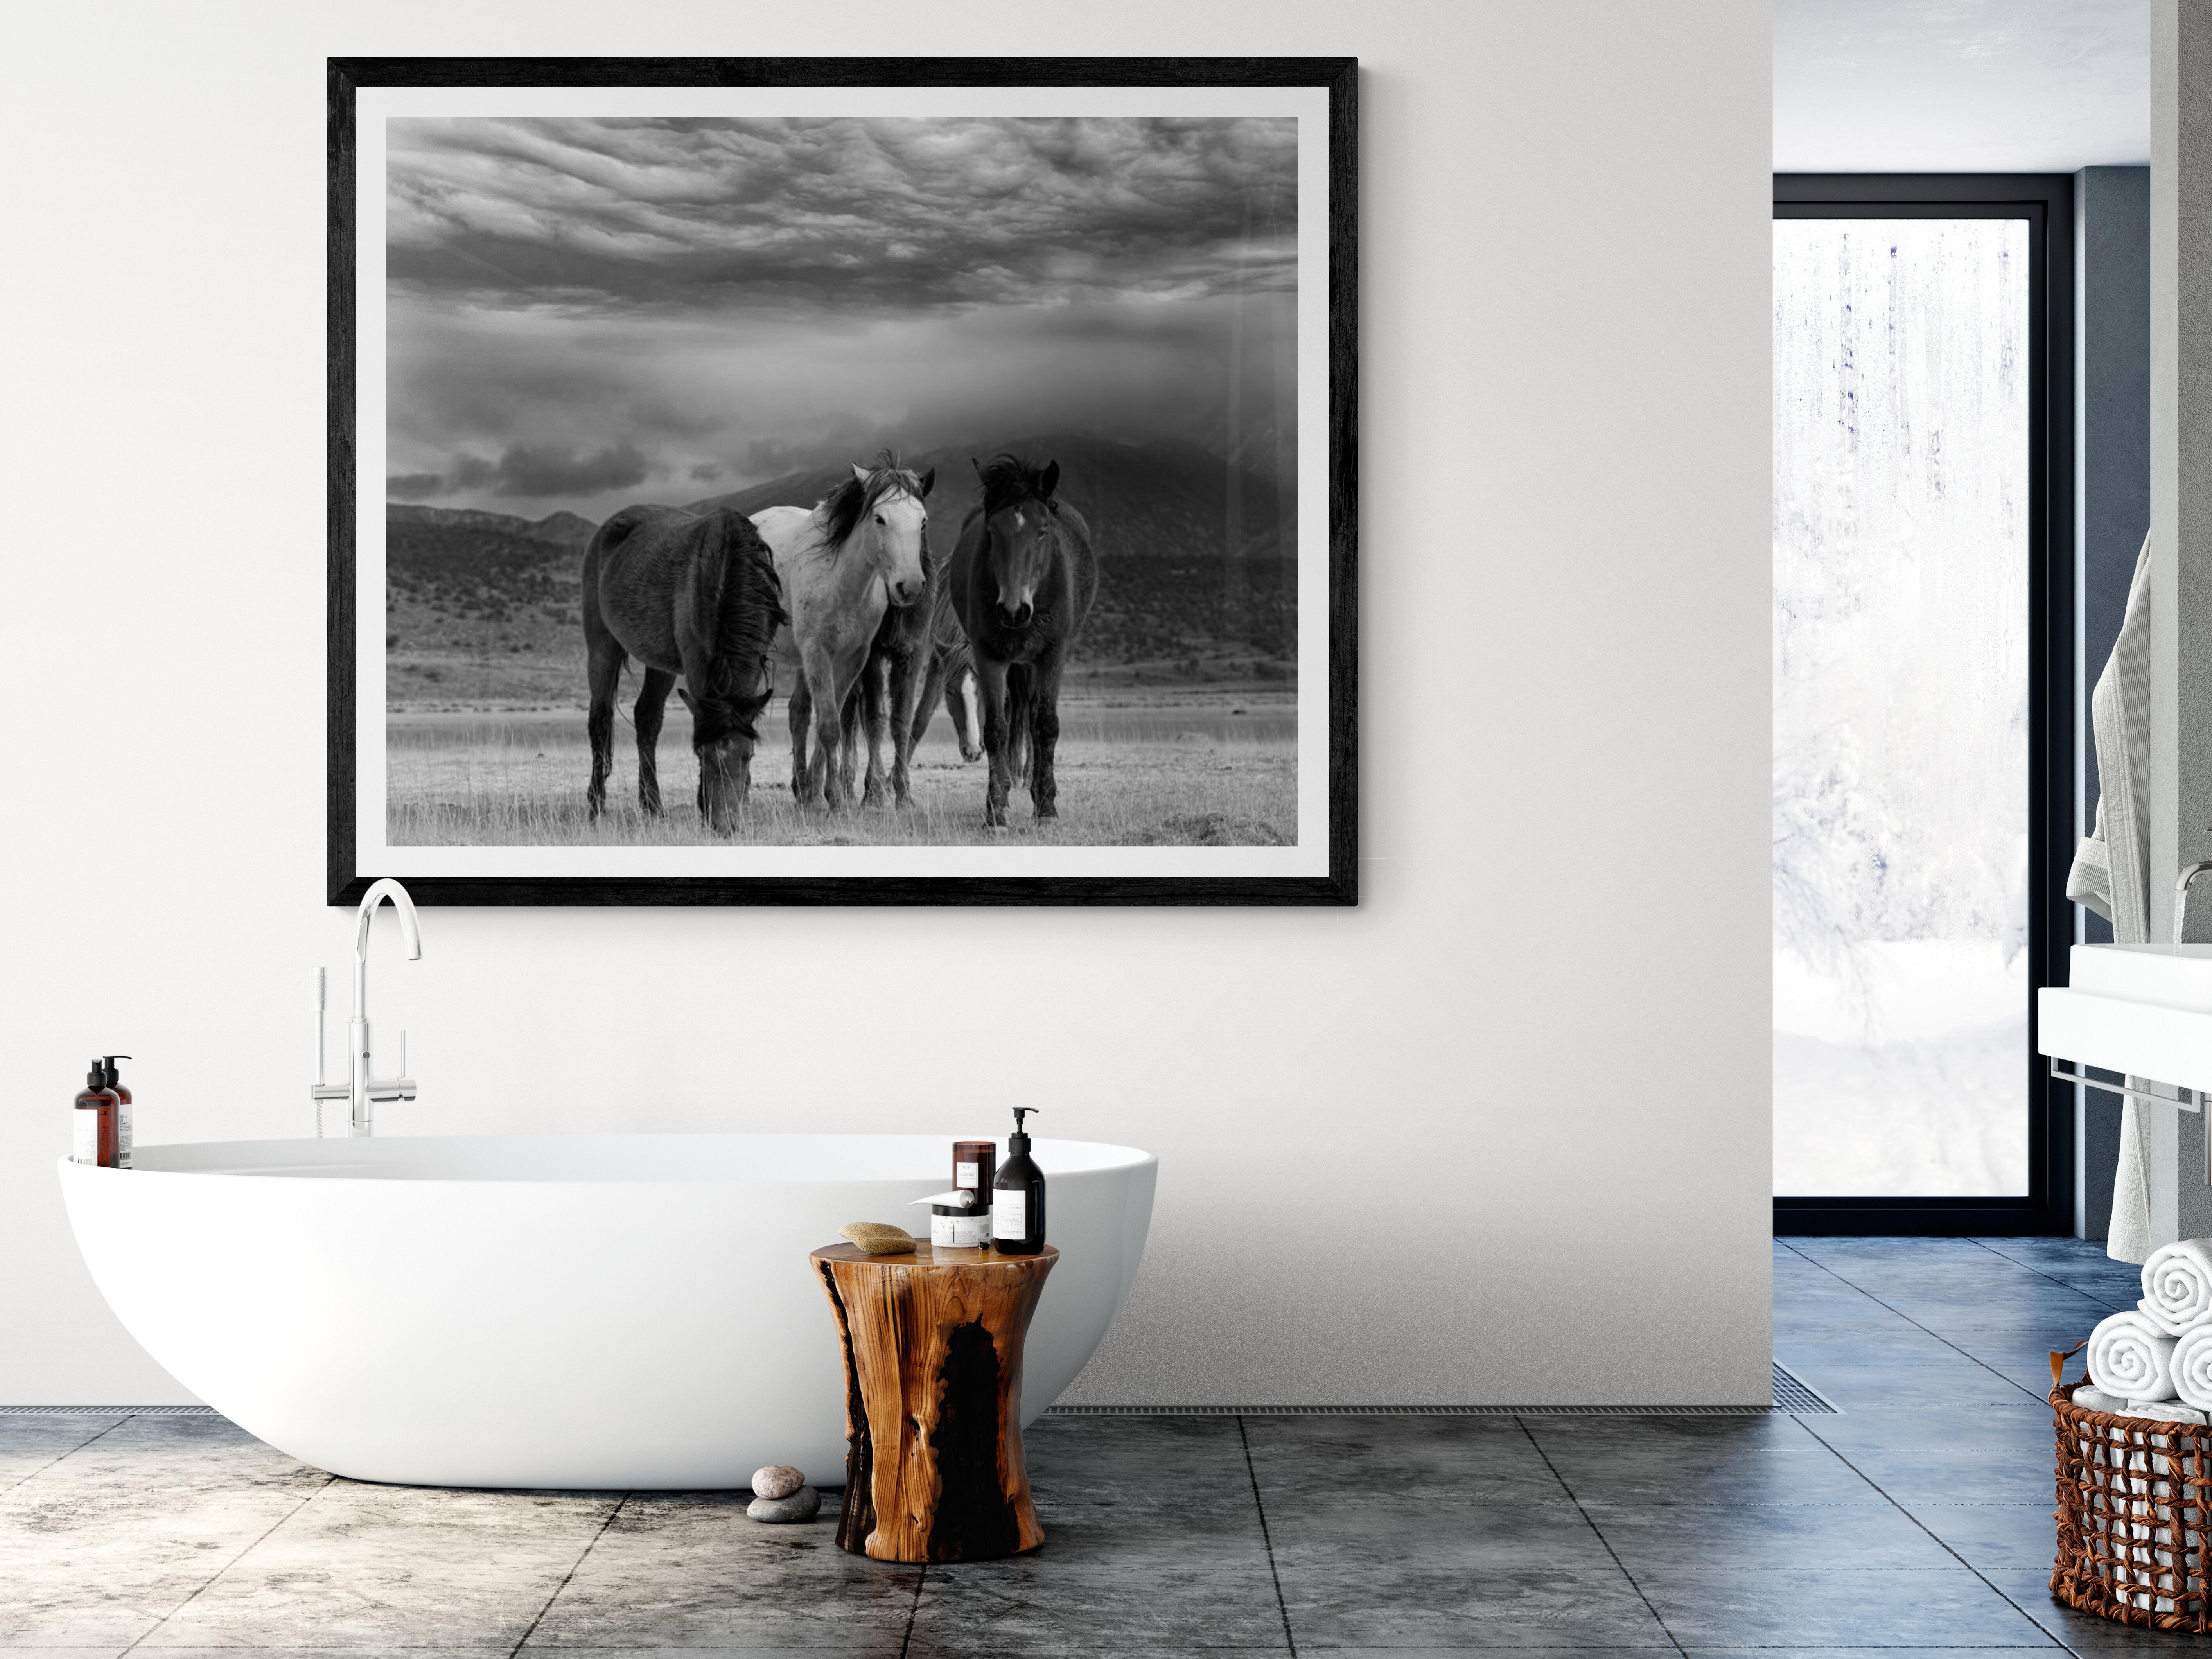 Dies ist eine zeitgenössische Schwarz-Weiß-Fotografie von nordamerikanischen Wildpferden
Fotografie von Shane Russeck
Gedruckt auf Archivglanzpapier 
Vorzeichenlos
Einrahmung verfügbar. Erkundigen Sie sich nach den Preisen. 
40